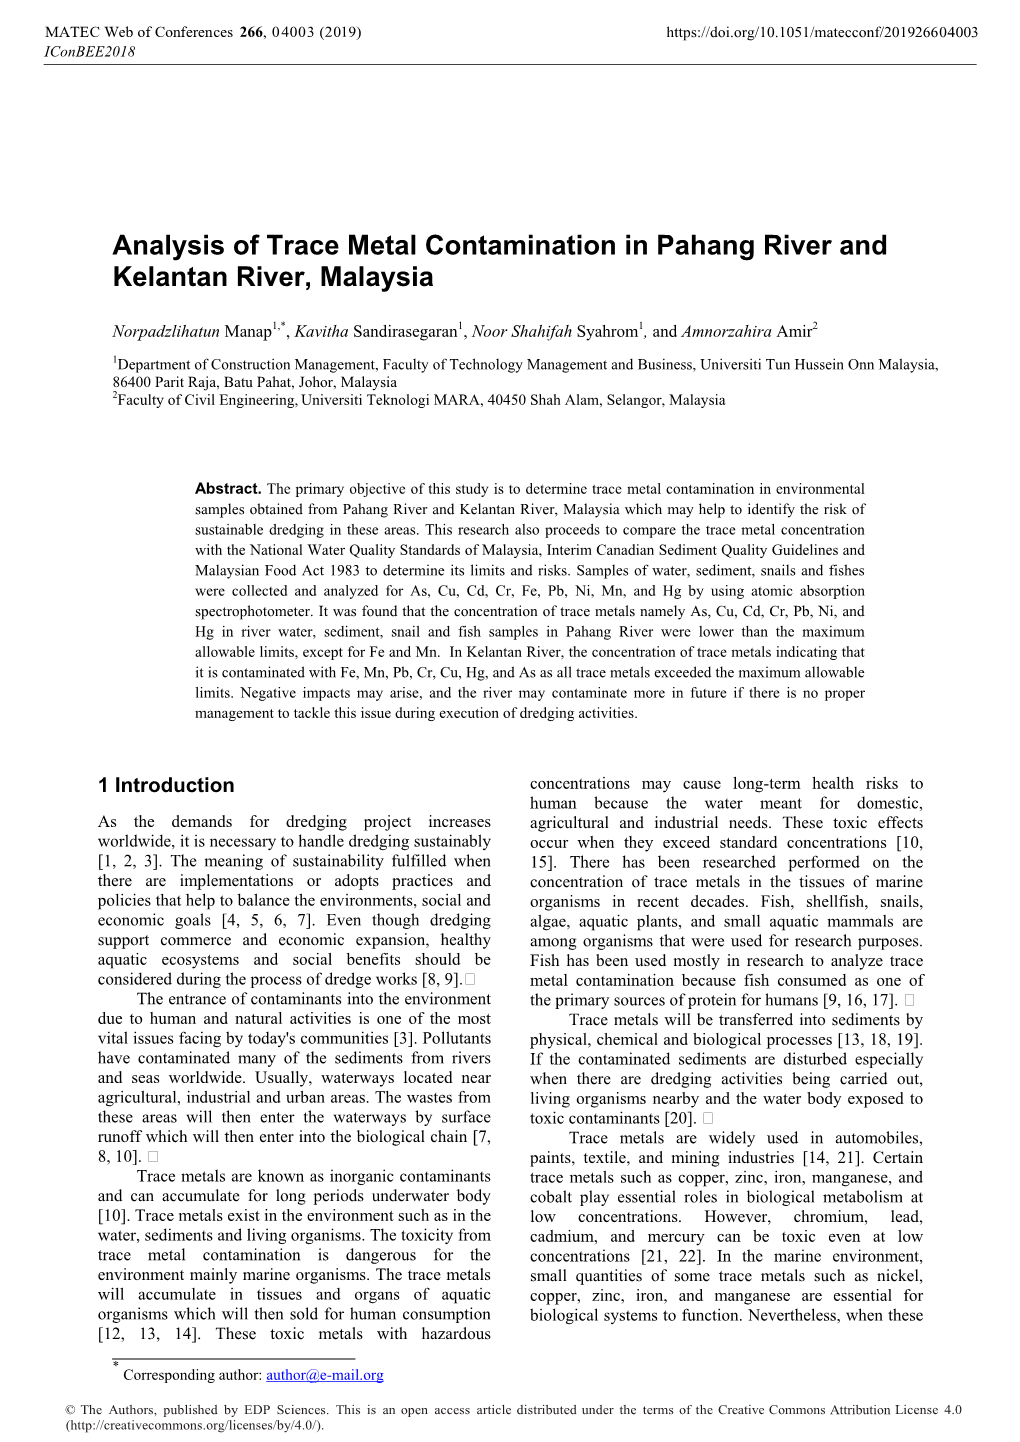 Analysis of Trace Metal Contamination in Pahang River and Kelantan River, Malaysia